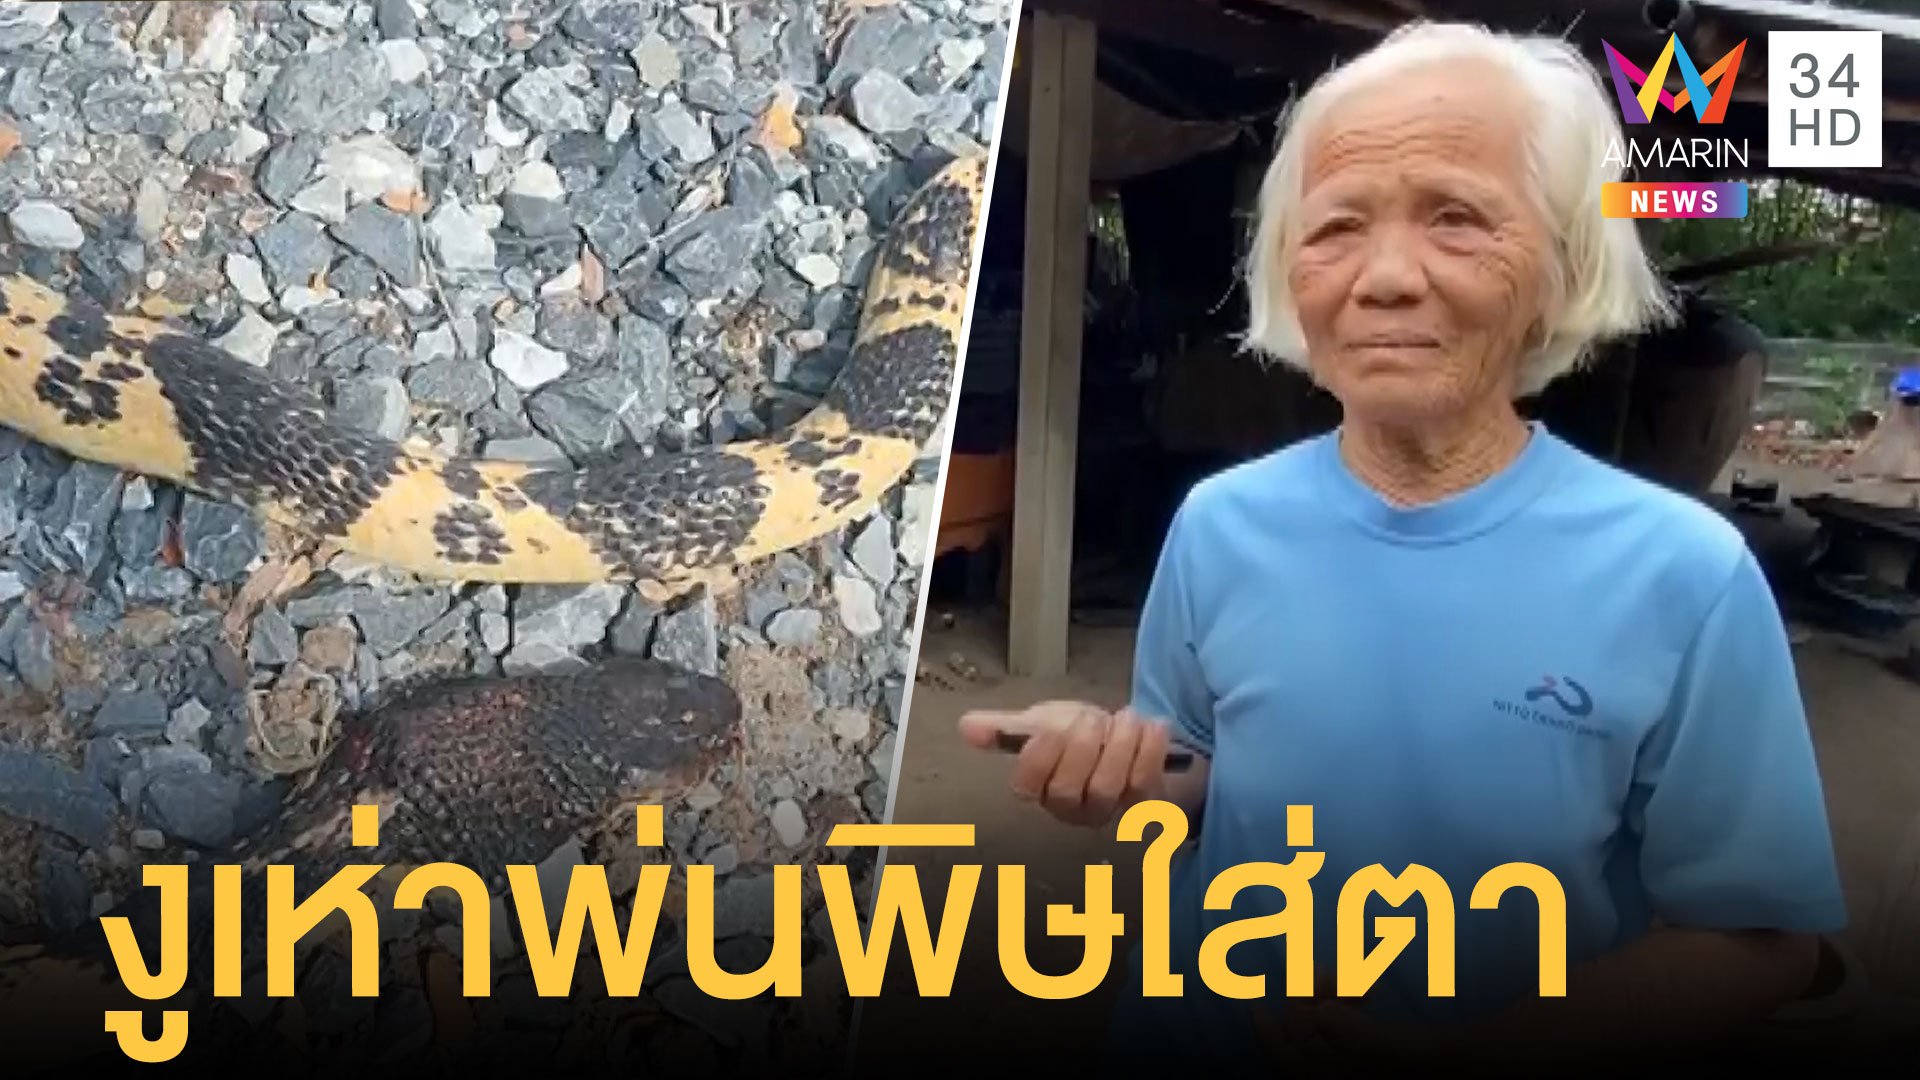 หวิดบอด! ยายวัย 79 ถูกงูเห่าพ่นพิษใส่ตา | ข่าวเที่ยงอมรินทร์ | 10 ส.ค. 63 | AMARIN TVHD34